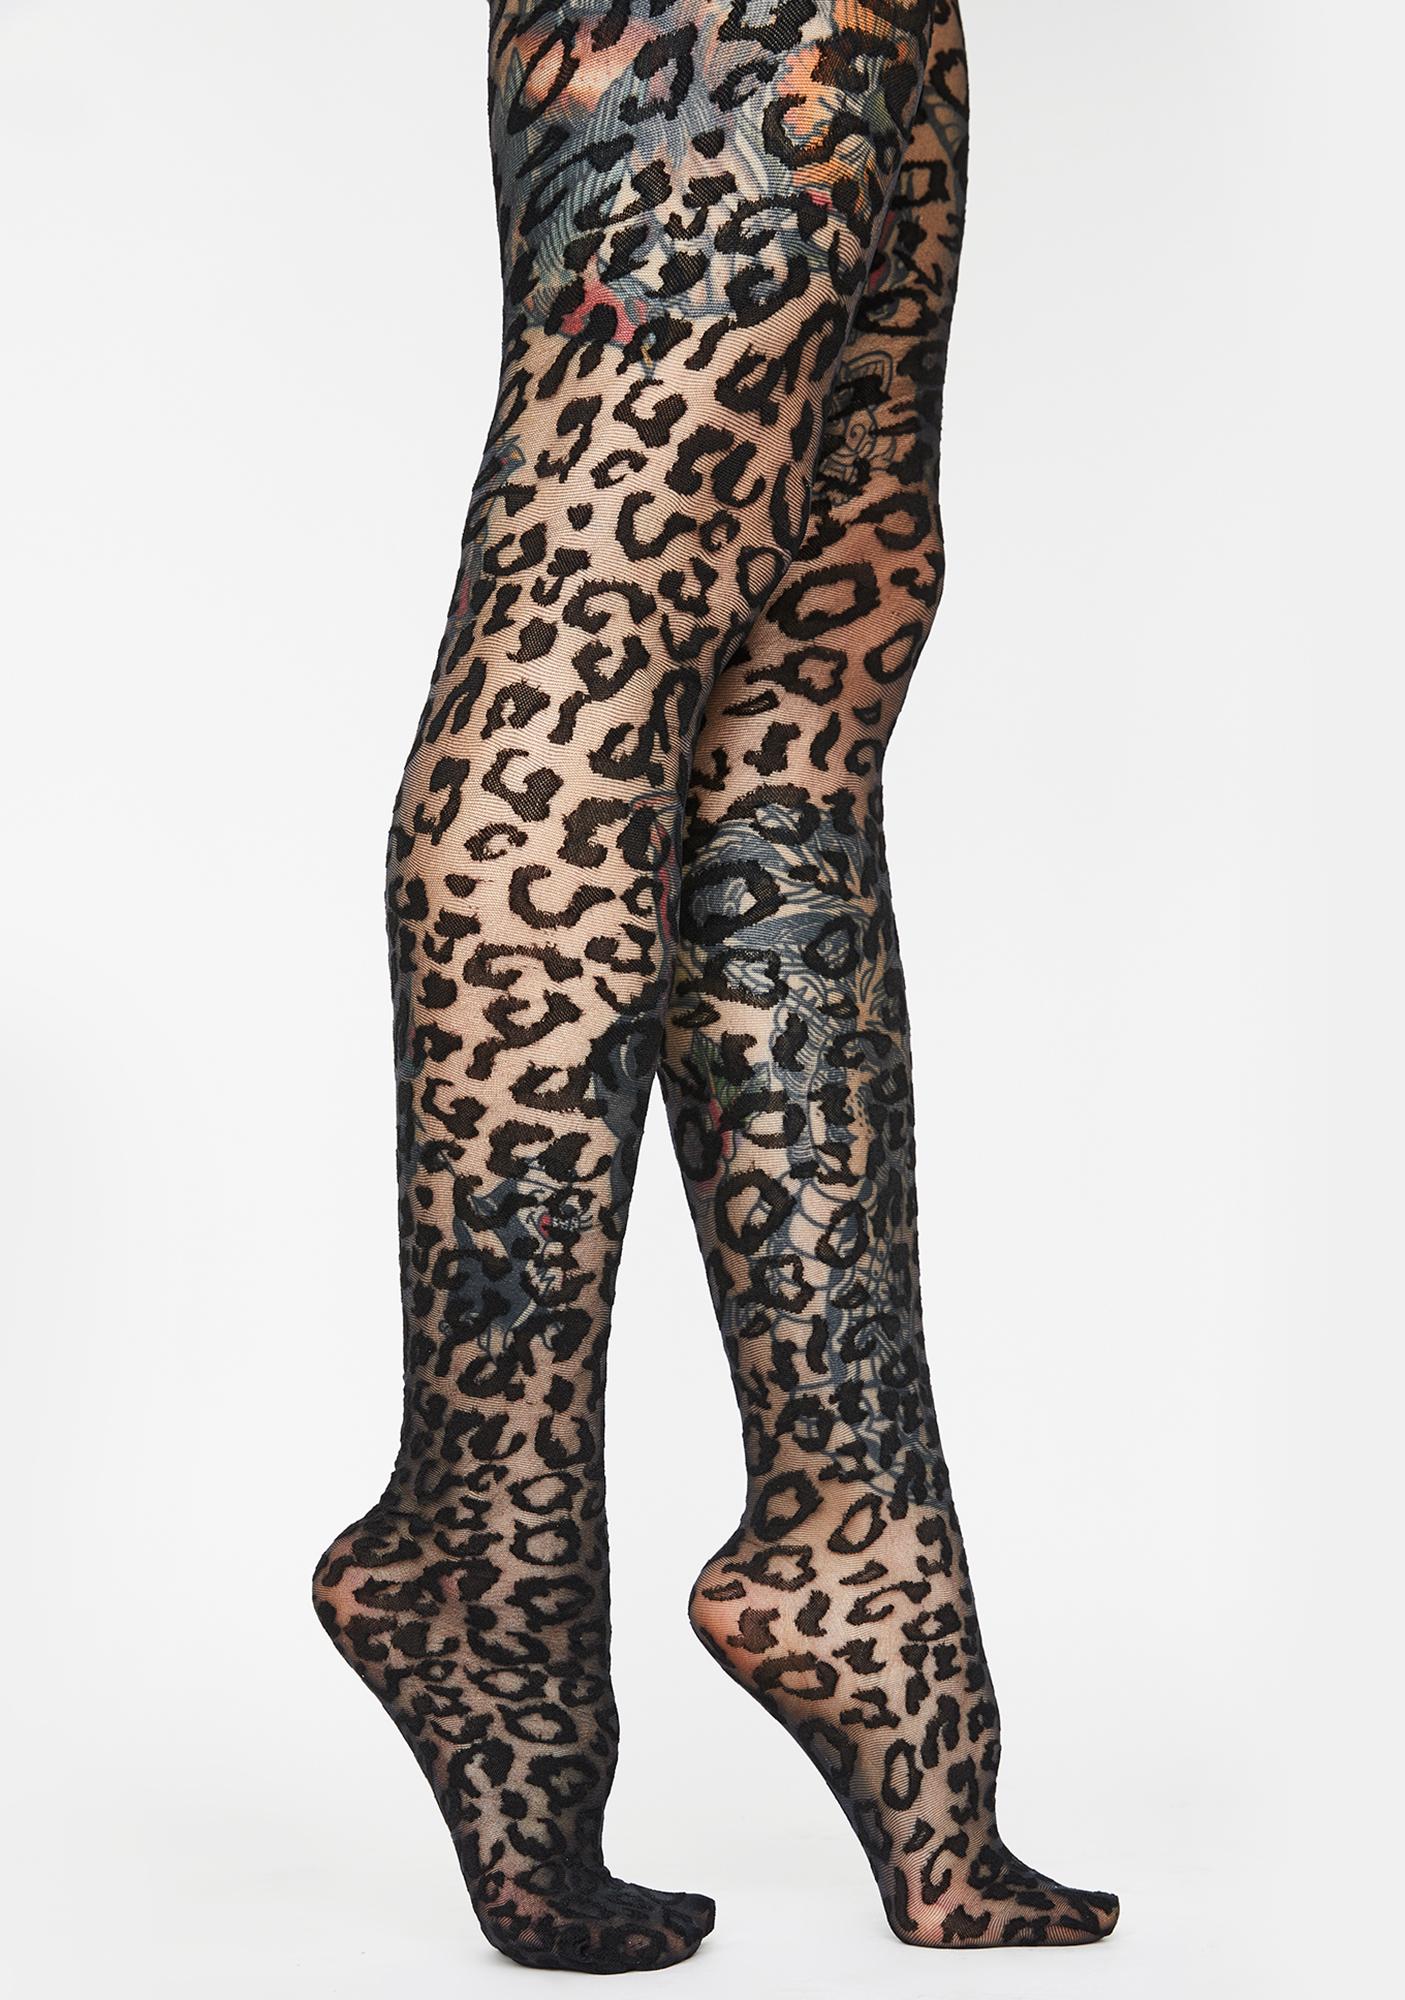 Leopard Spot Printed Tights - Black | Dolls Kill